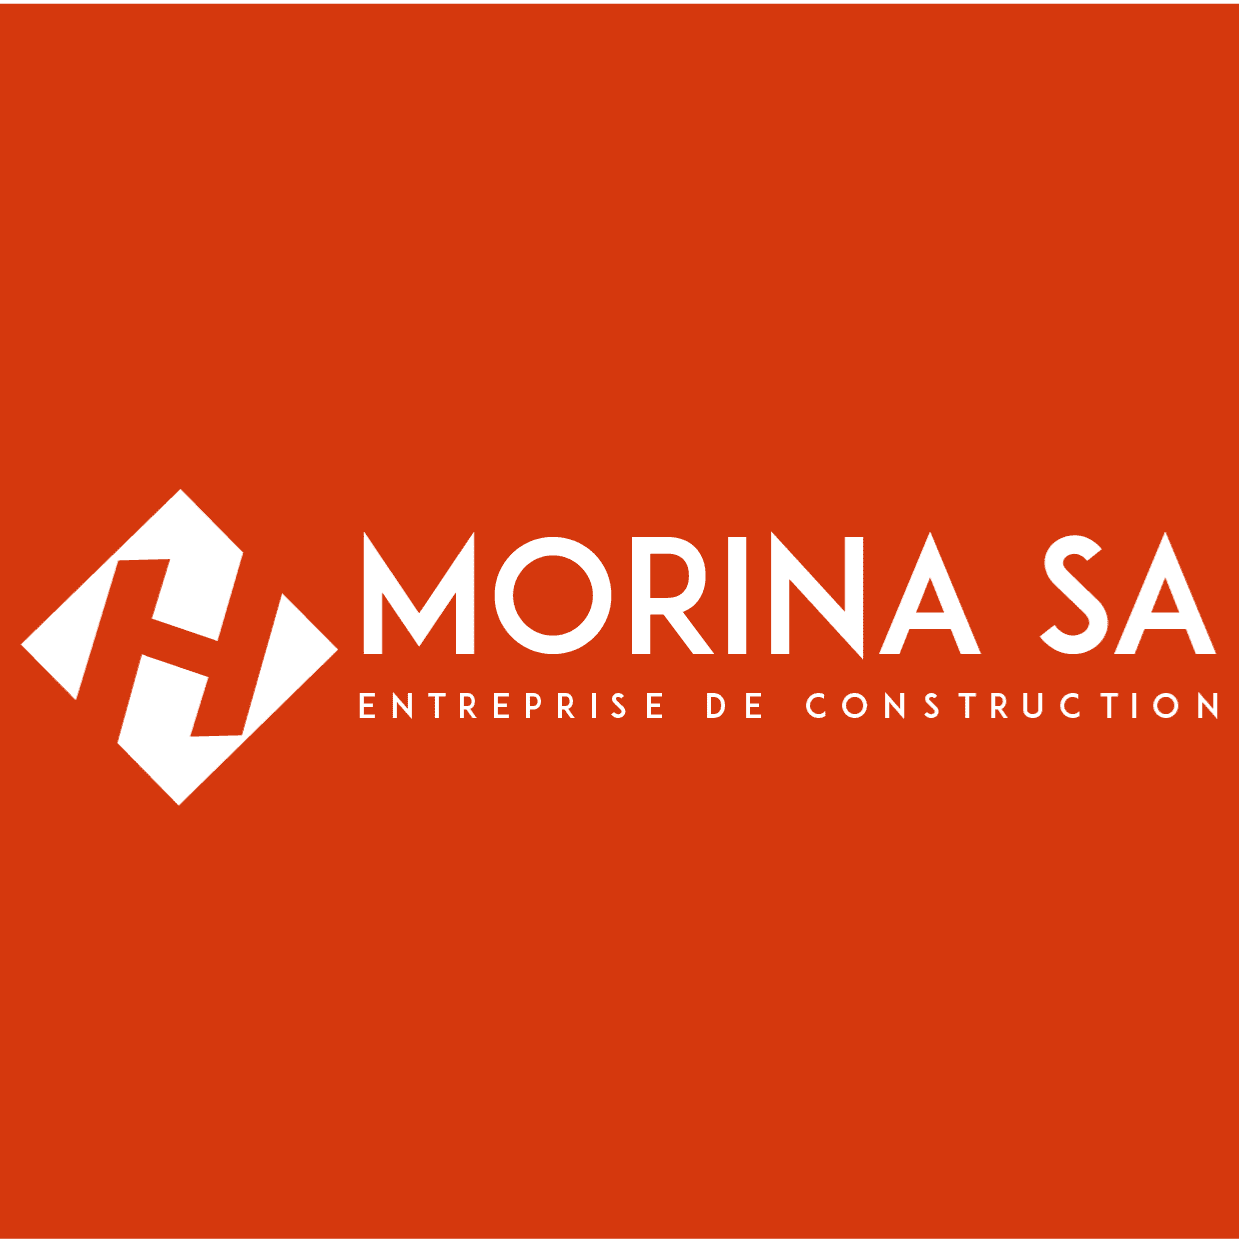 H Morina SA